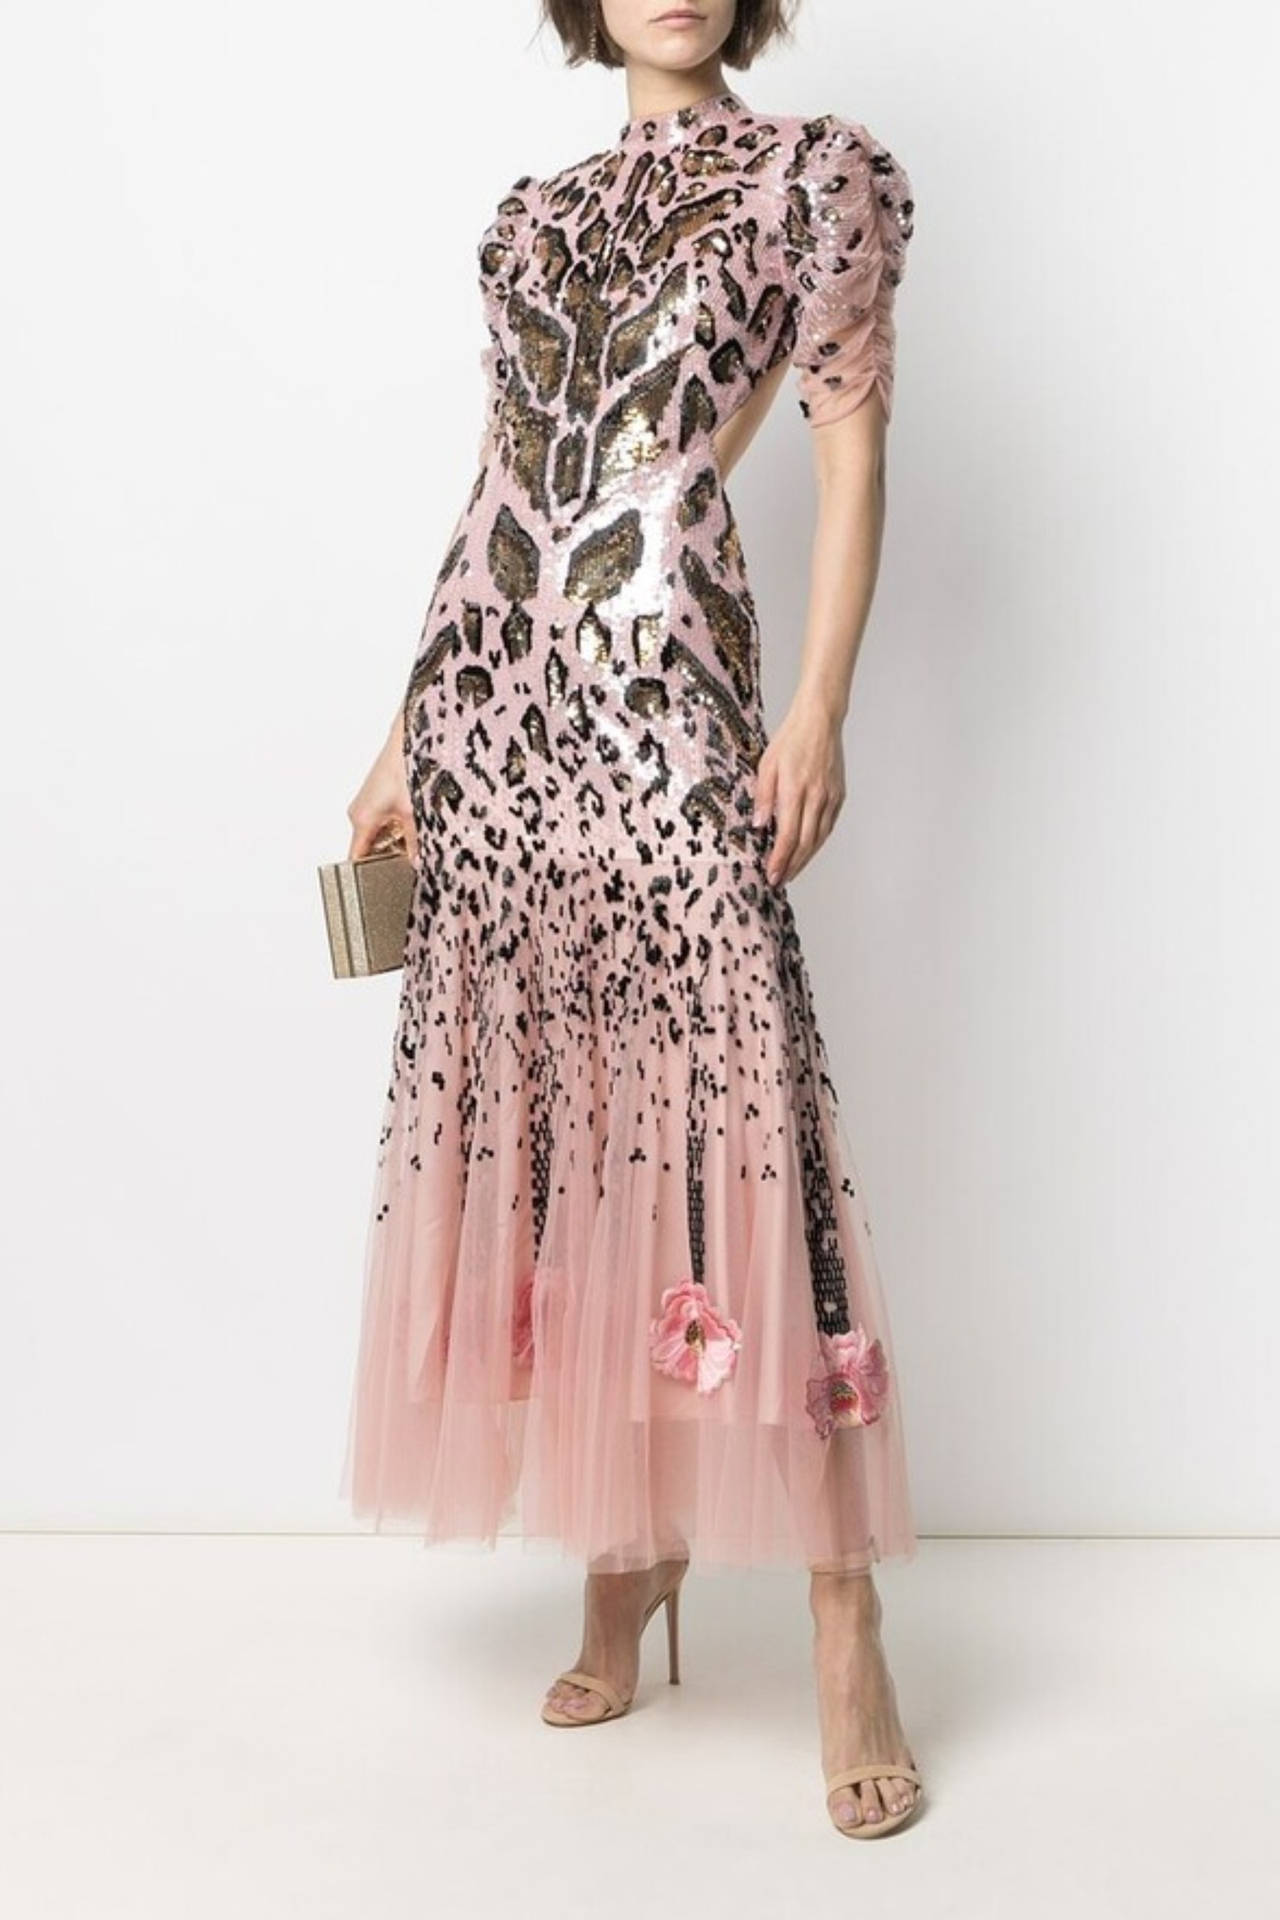 Temperleylondon Rosa Kleid Mit Verstecktem Gesicht Wallpaper